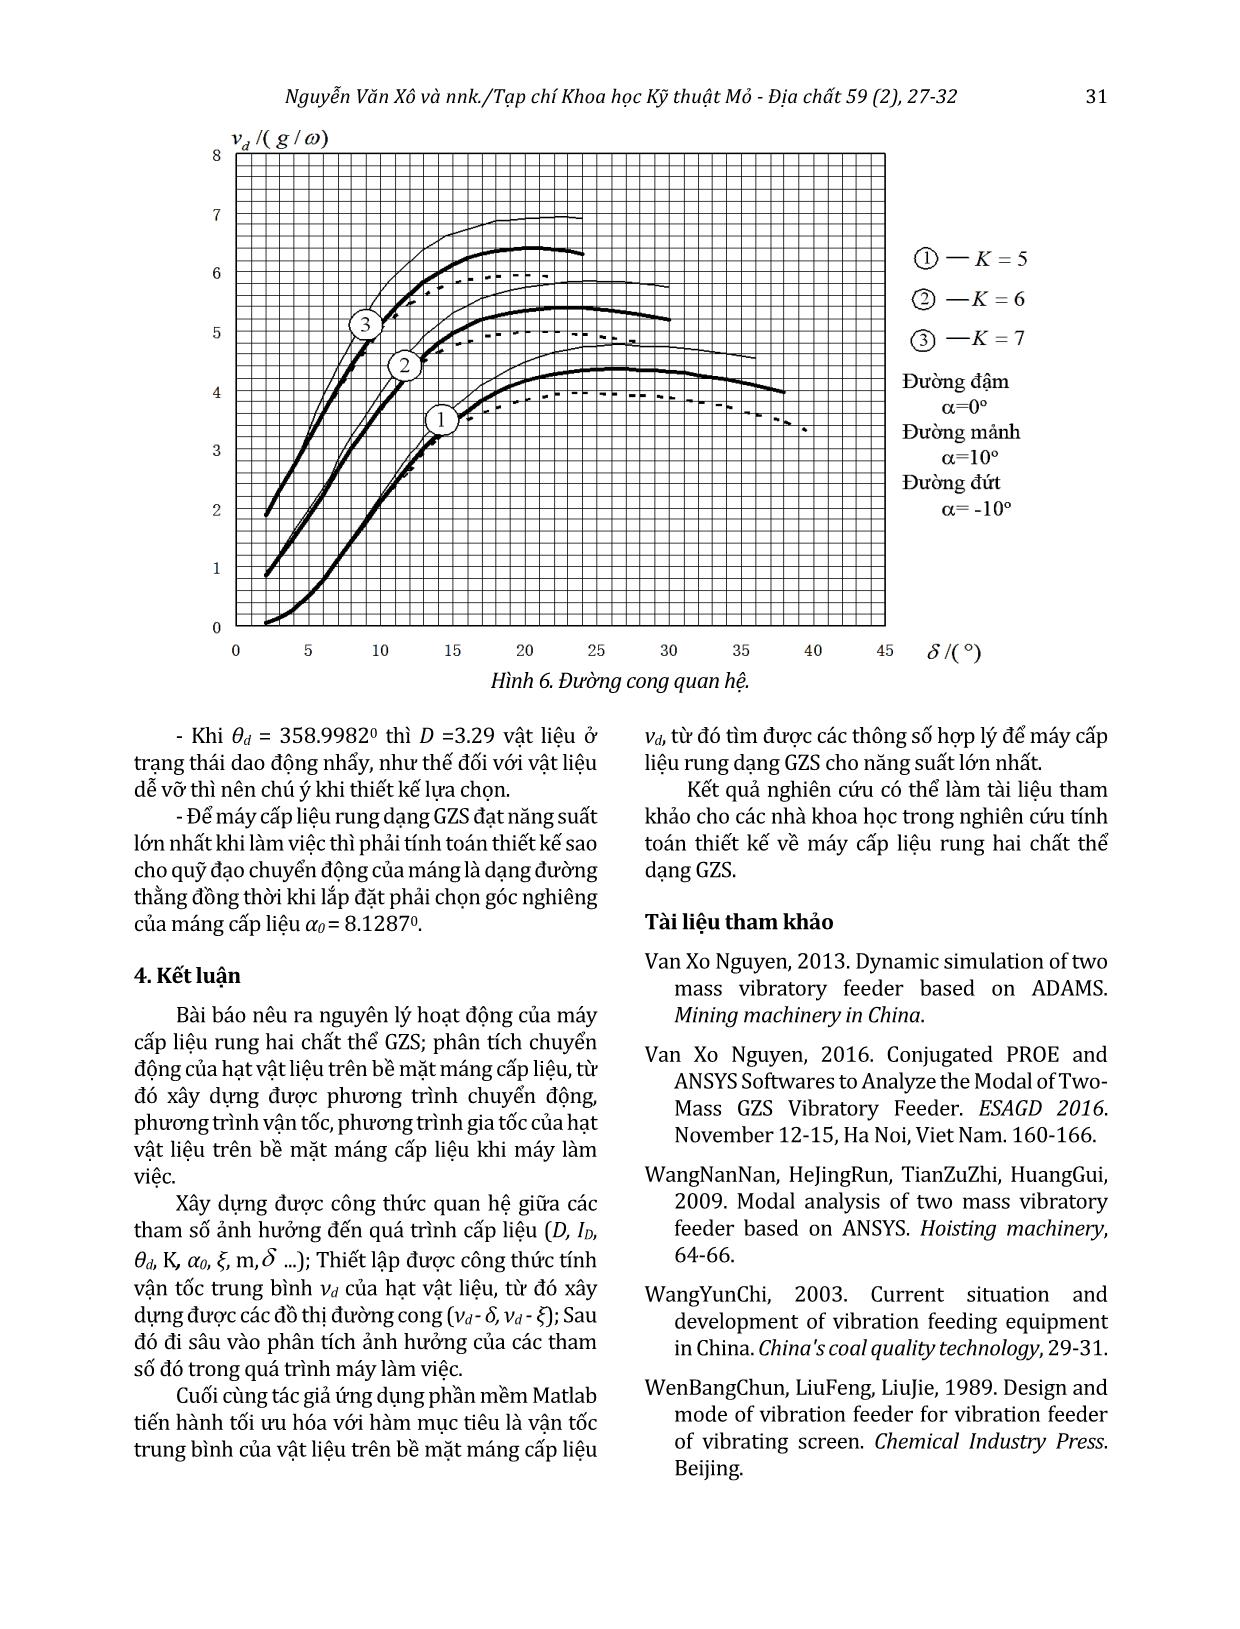 Phân tích chuyển động của hạt vật liệu và tối ưu hóa các tham số của máy cấp liệu rung hai chất thể GZS trang 5